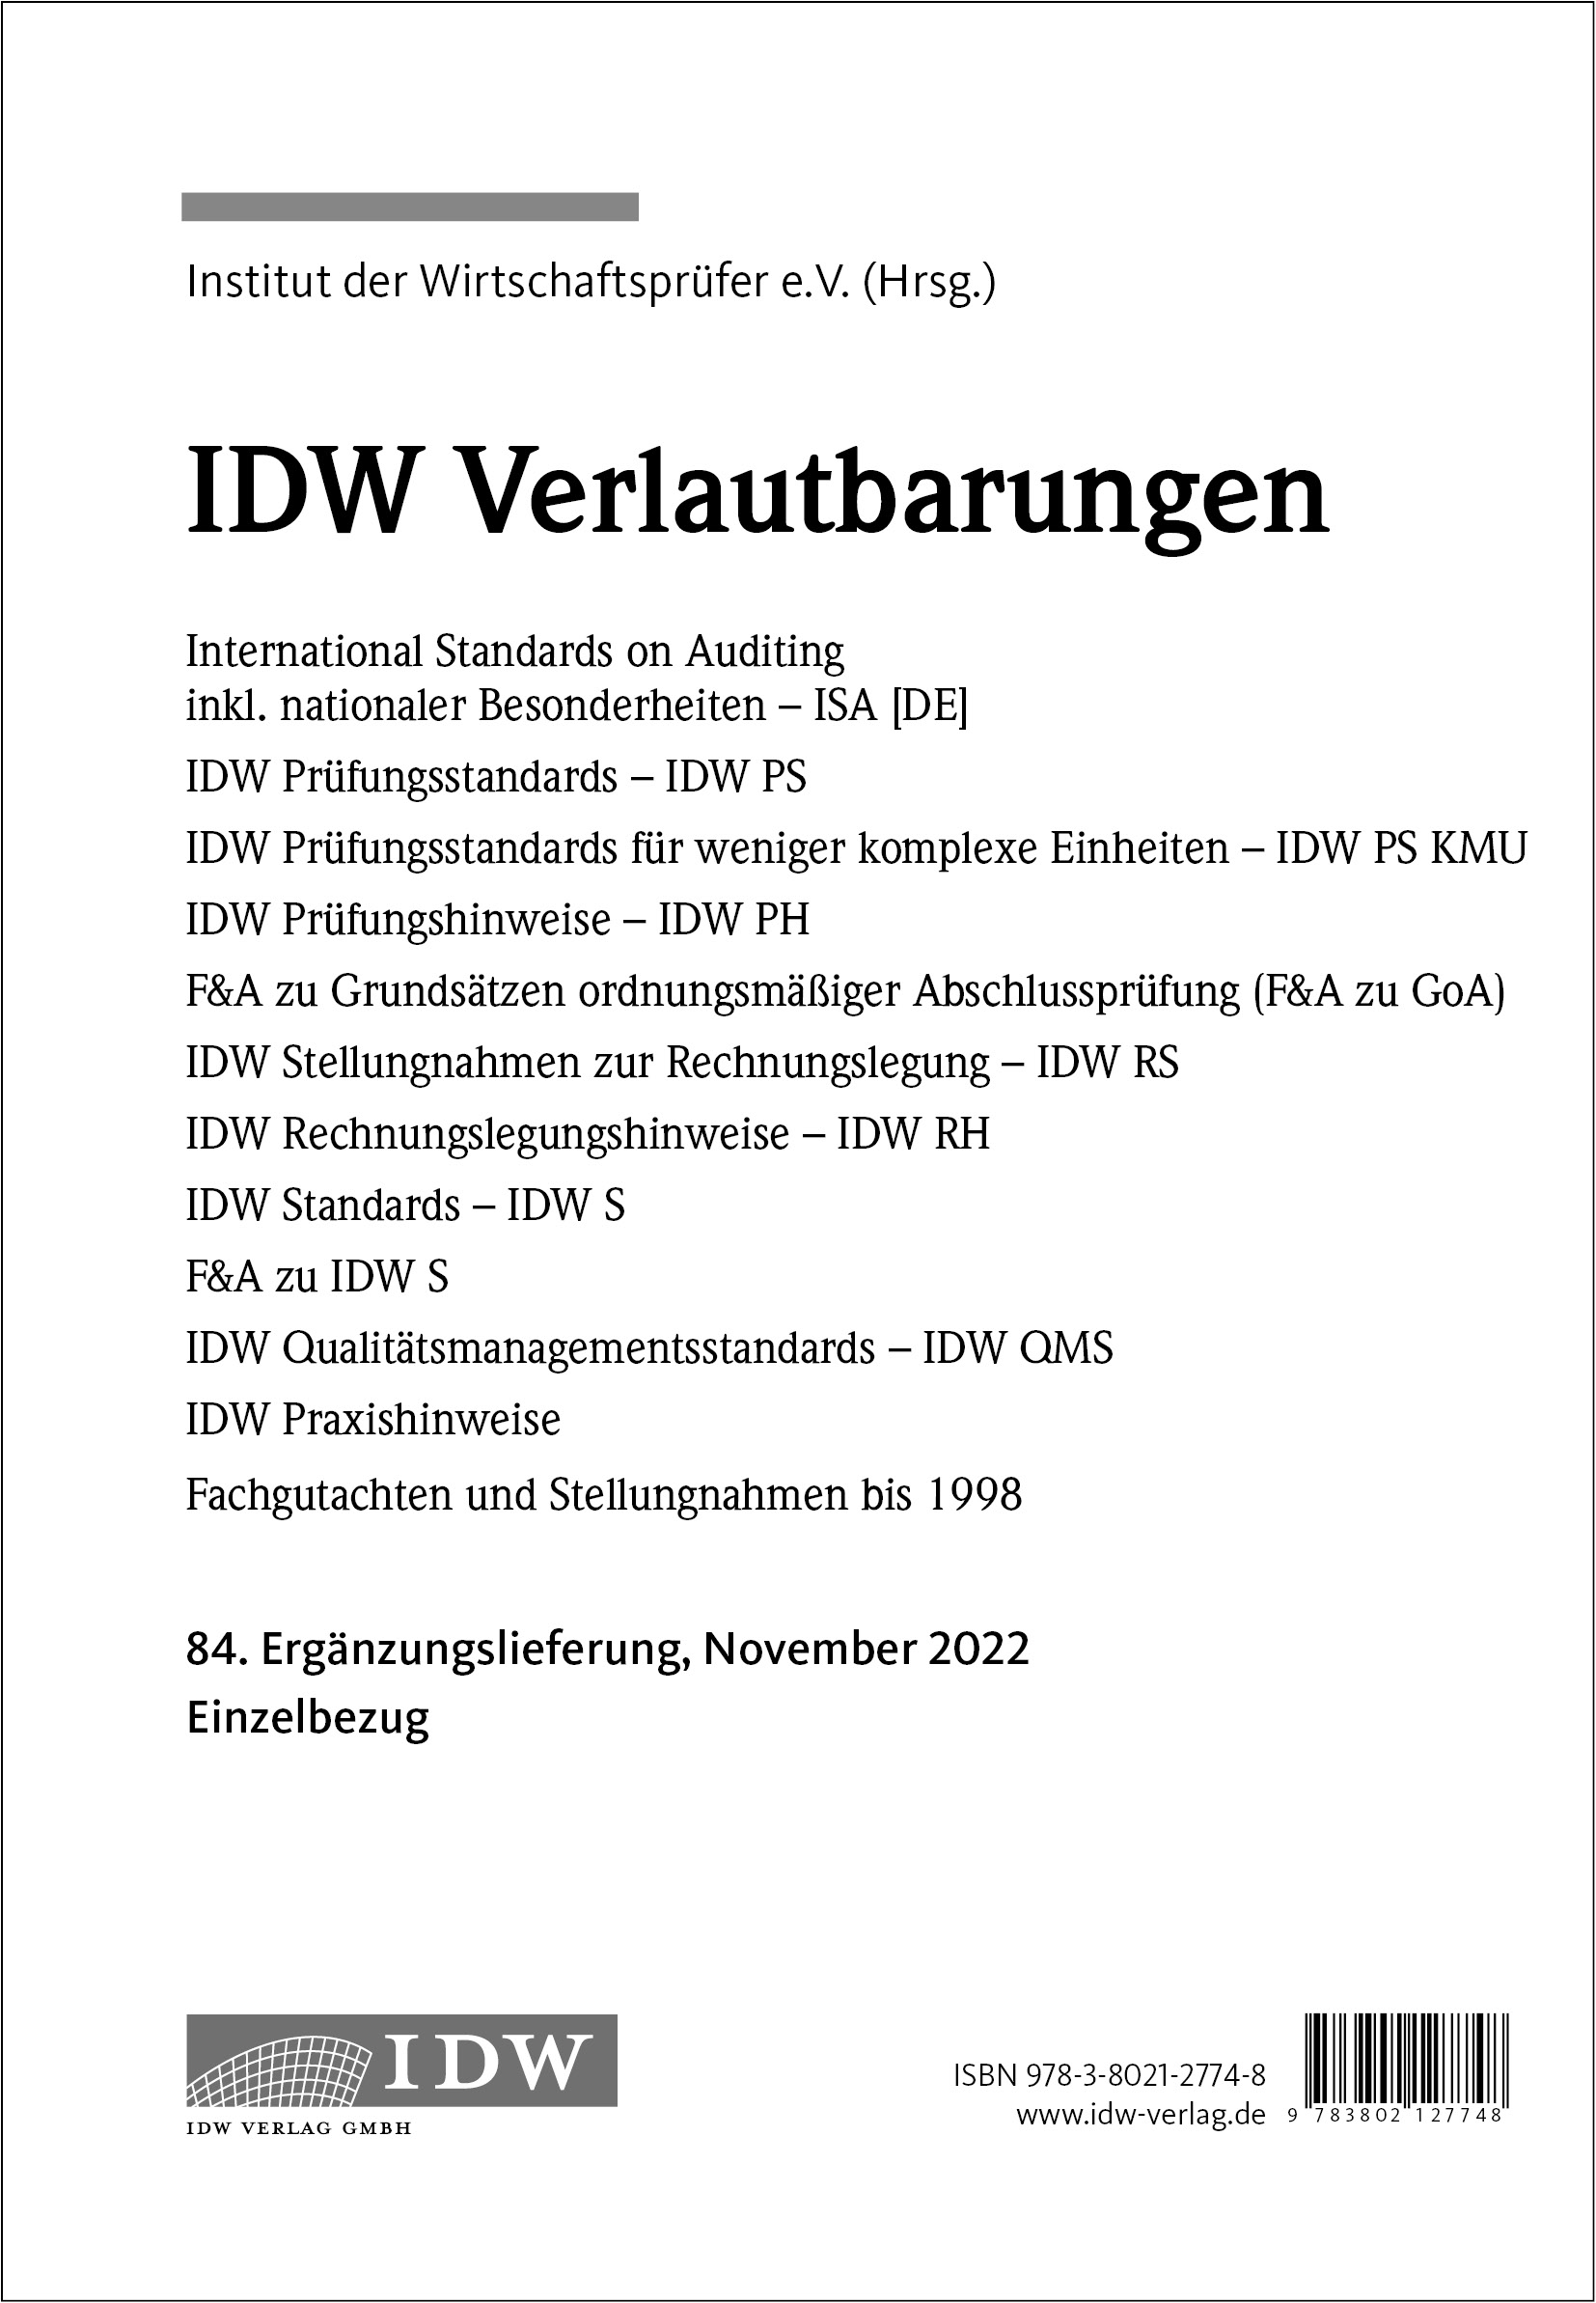 IDW Verlautbarungen - 84. Ergänzungslieferung 